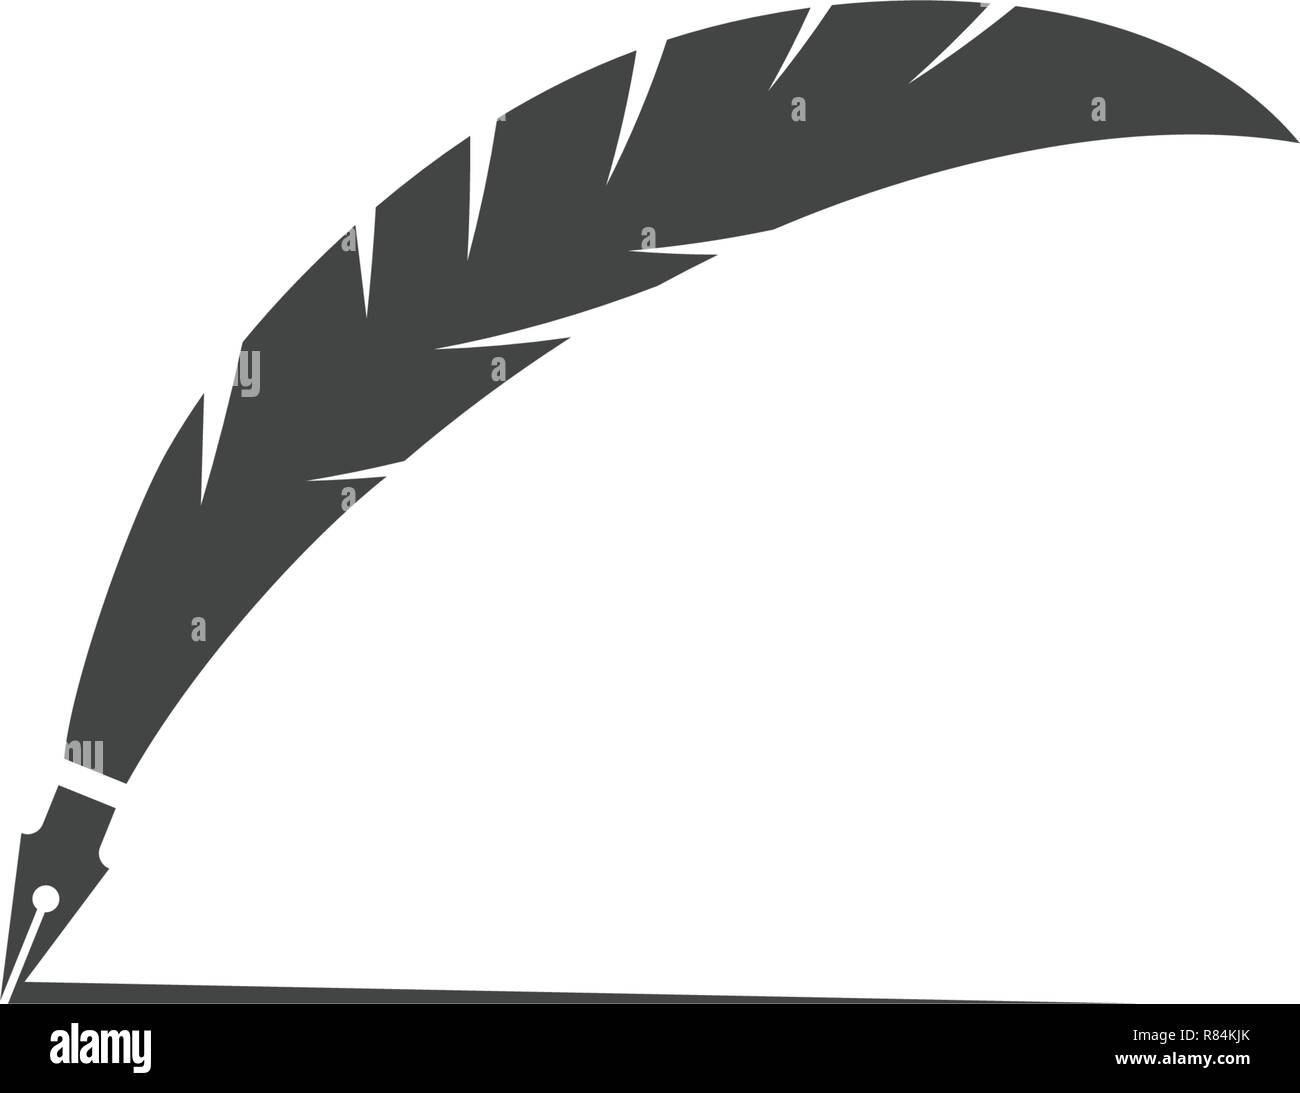 Feather Pen Logo Vector Template Stock Vector by ©muryono 417122288